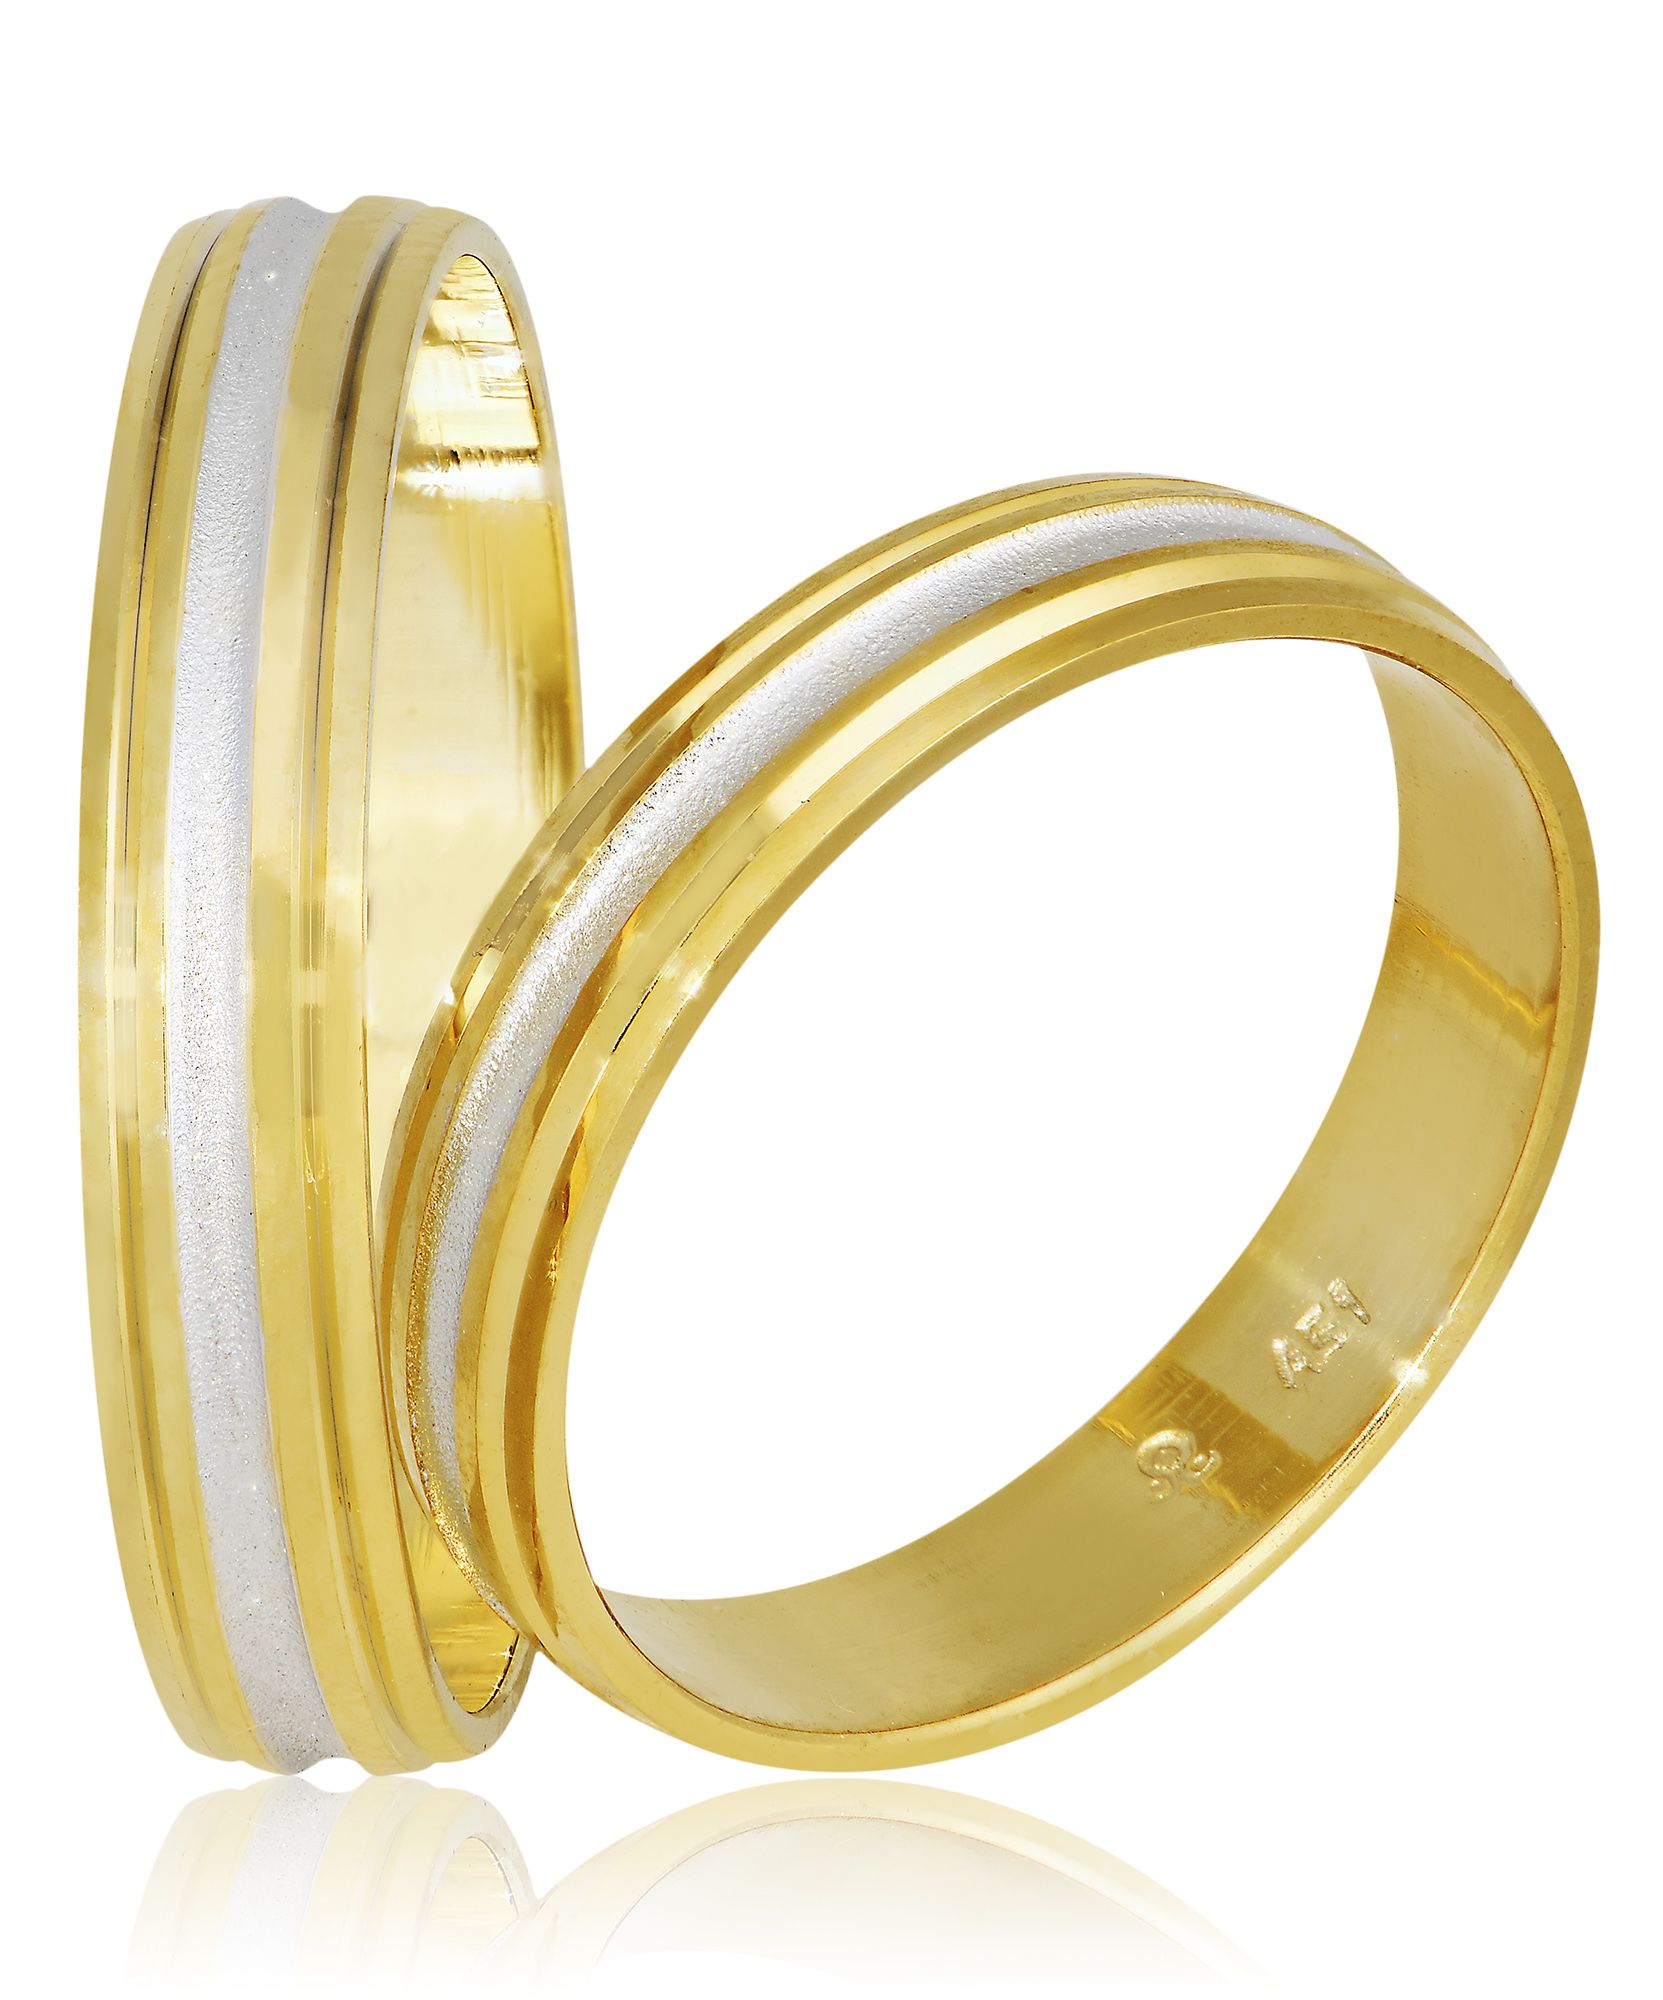 Βέρες γάμου απο χρυσό 3mm λουστρέ με σαγρέ λευκόχρυσο αυλάκι στο κέντρο (code Sxx2)